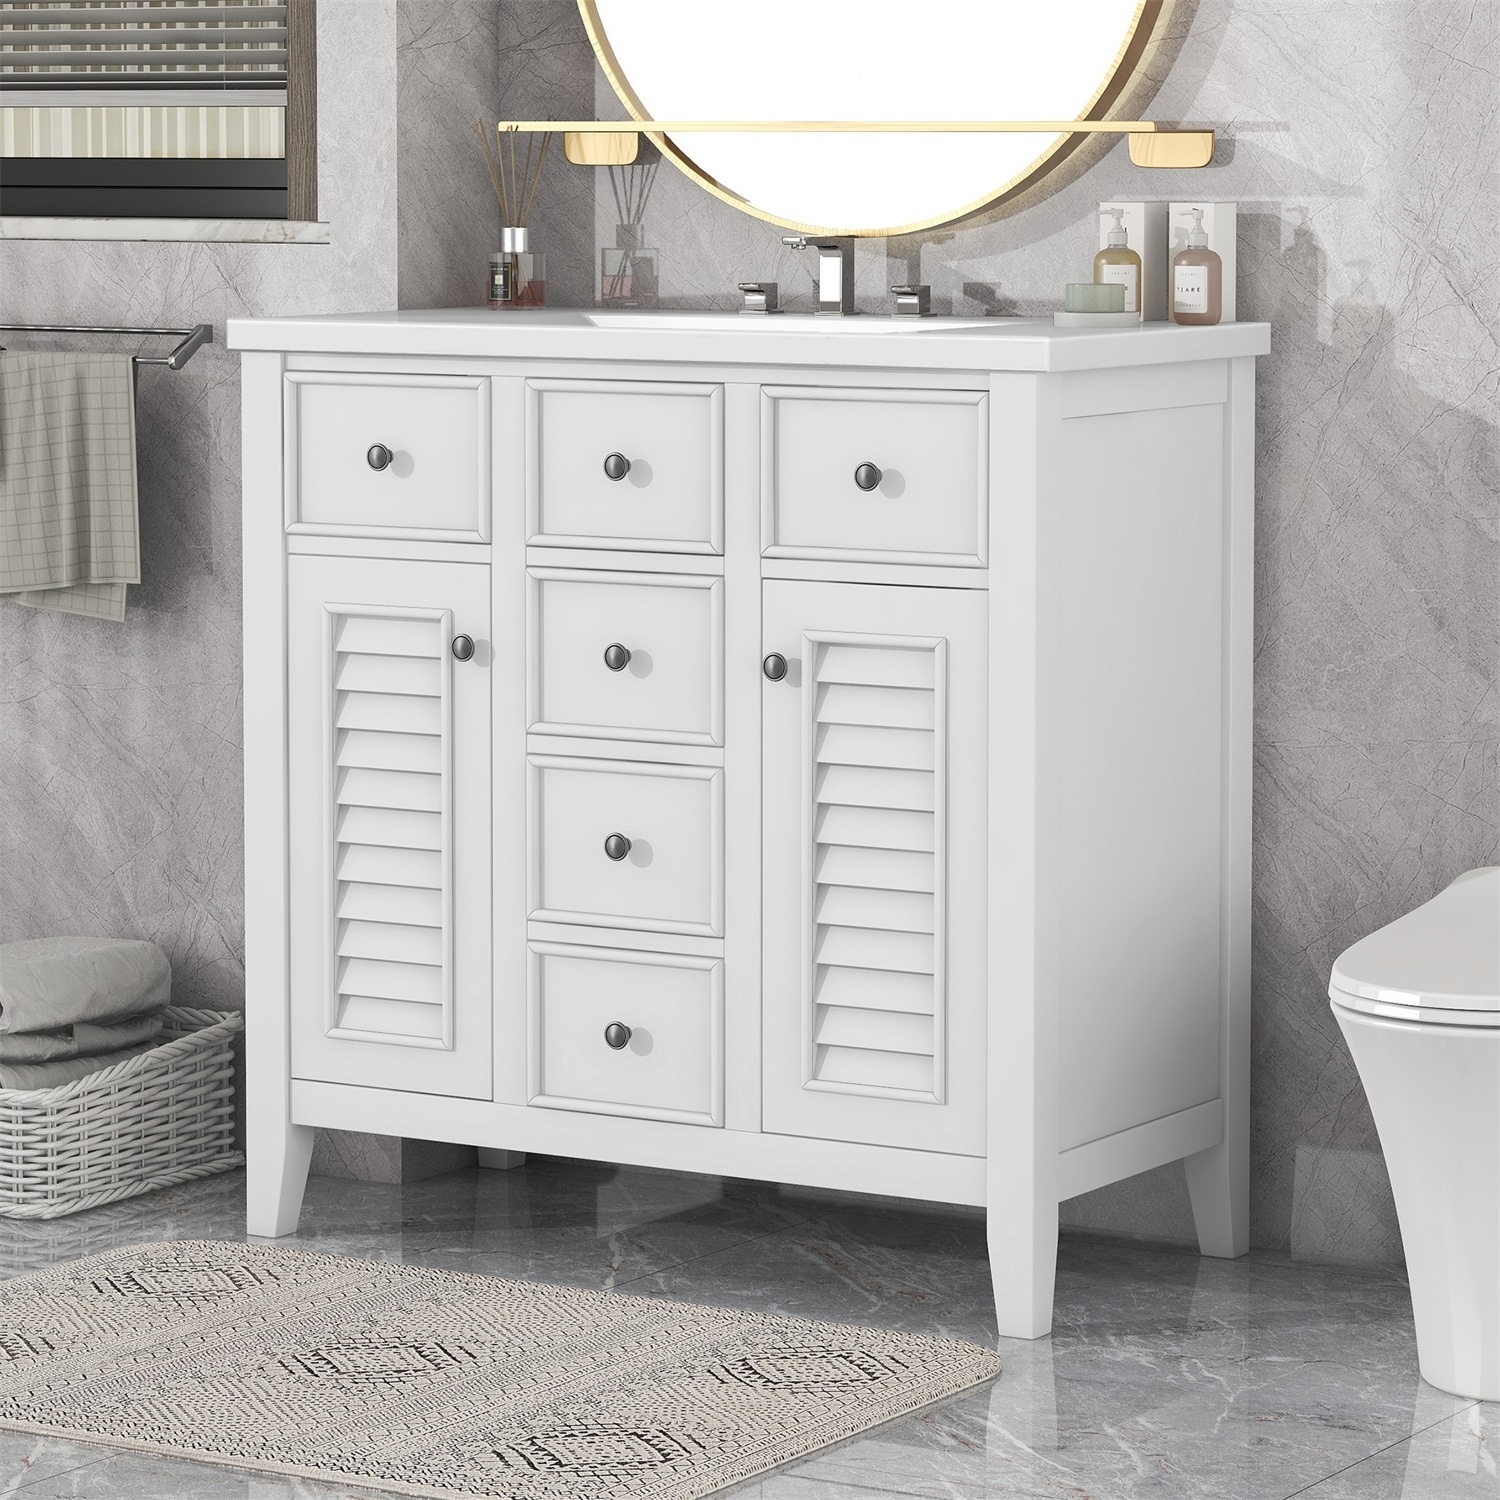  Merax, White 36 Inch Bathroom Vanity with Sink Set